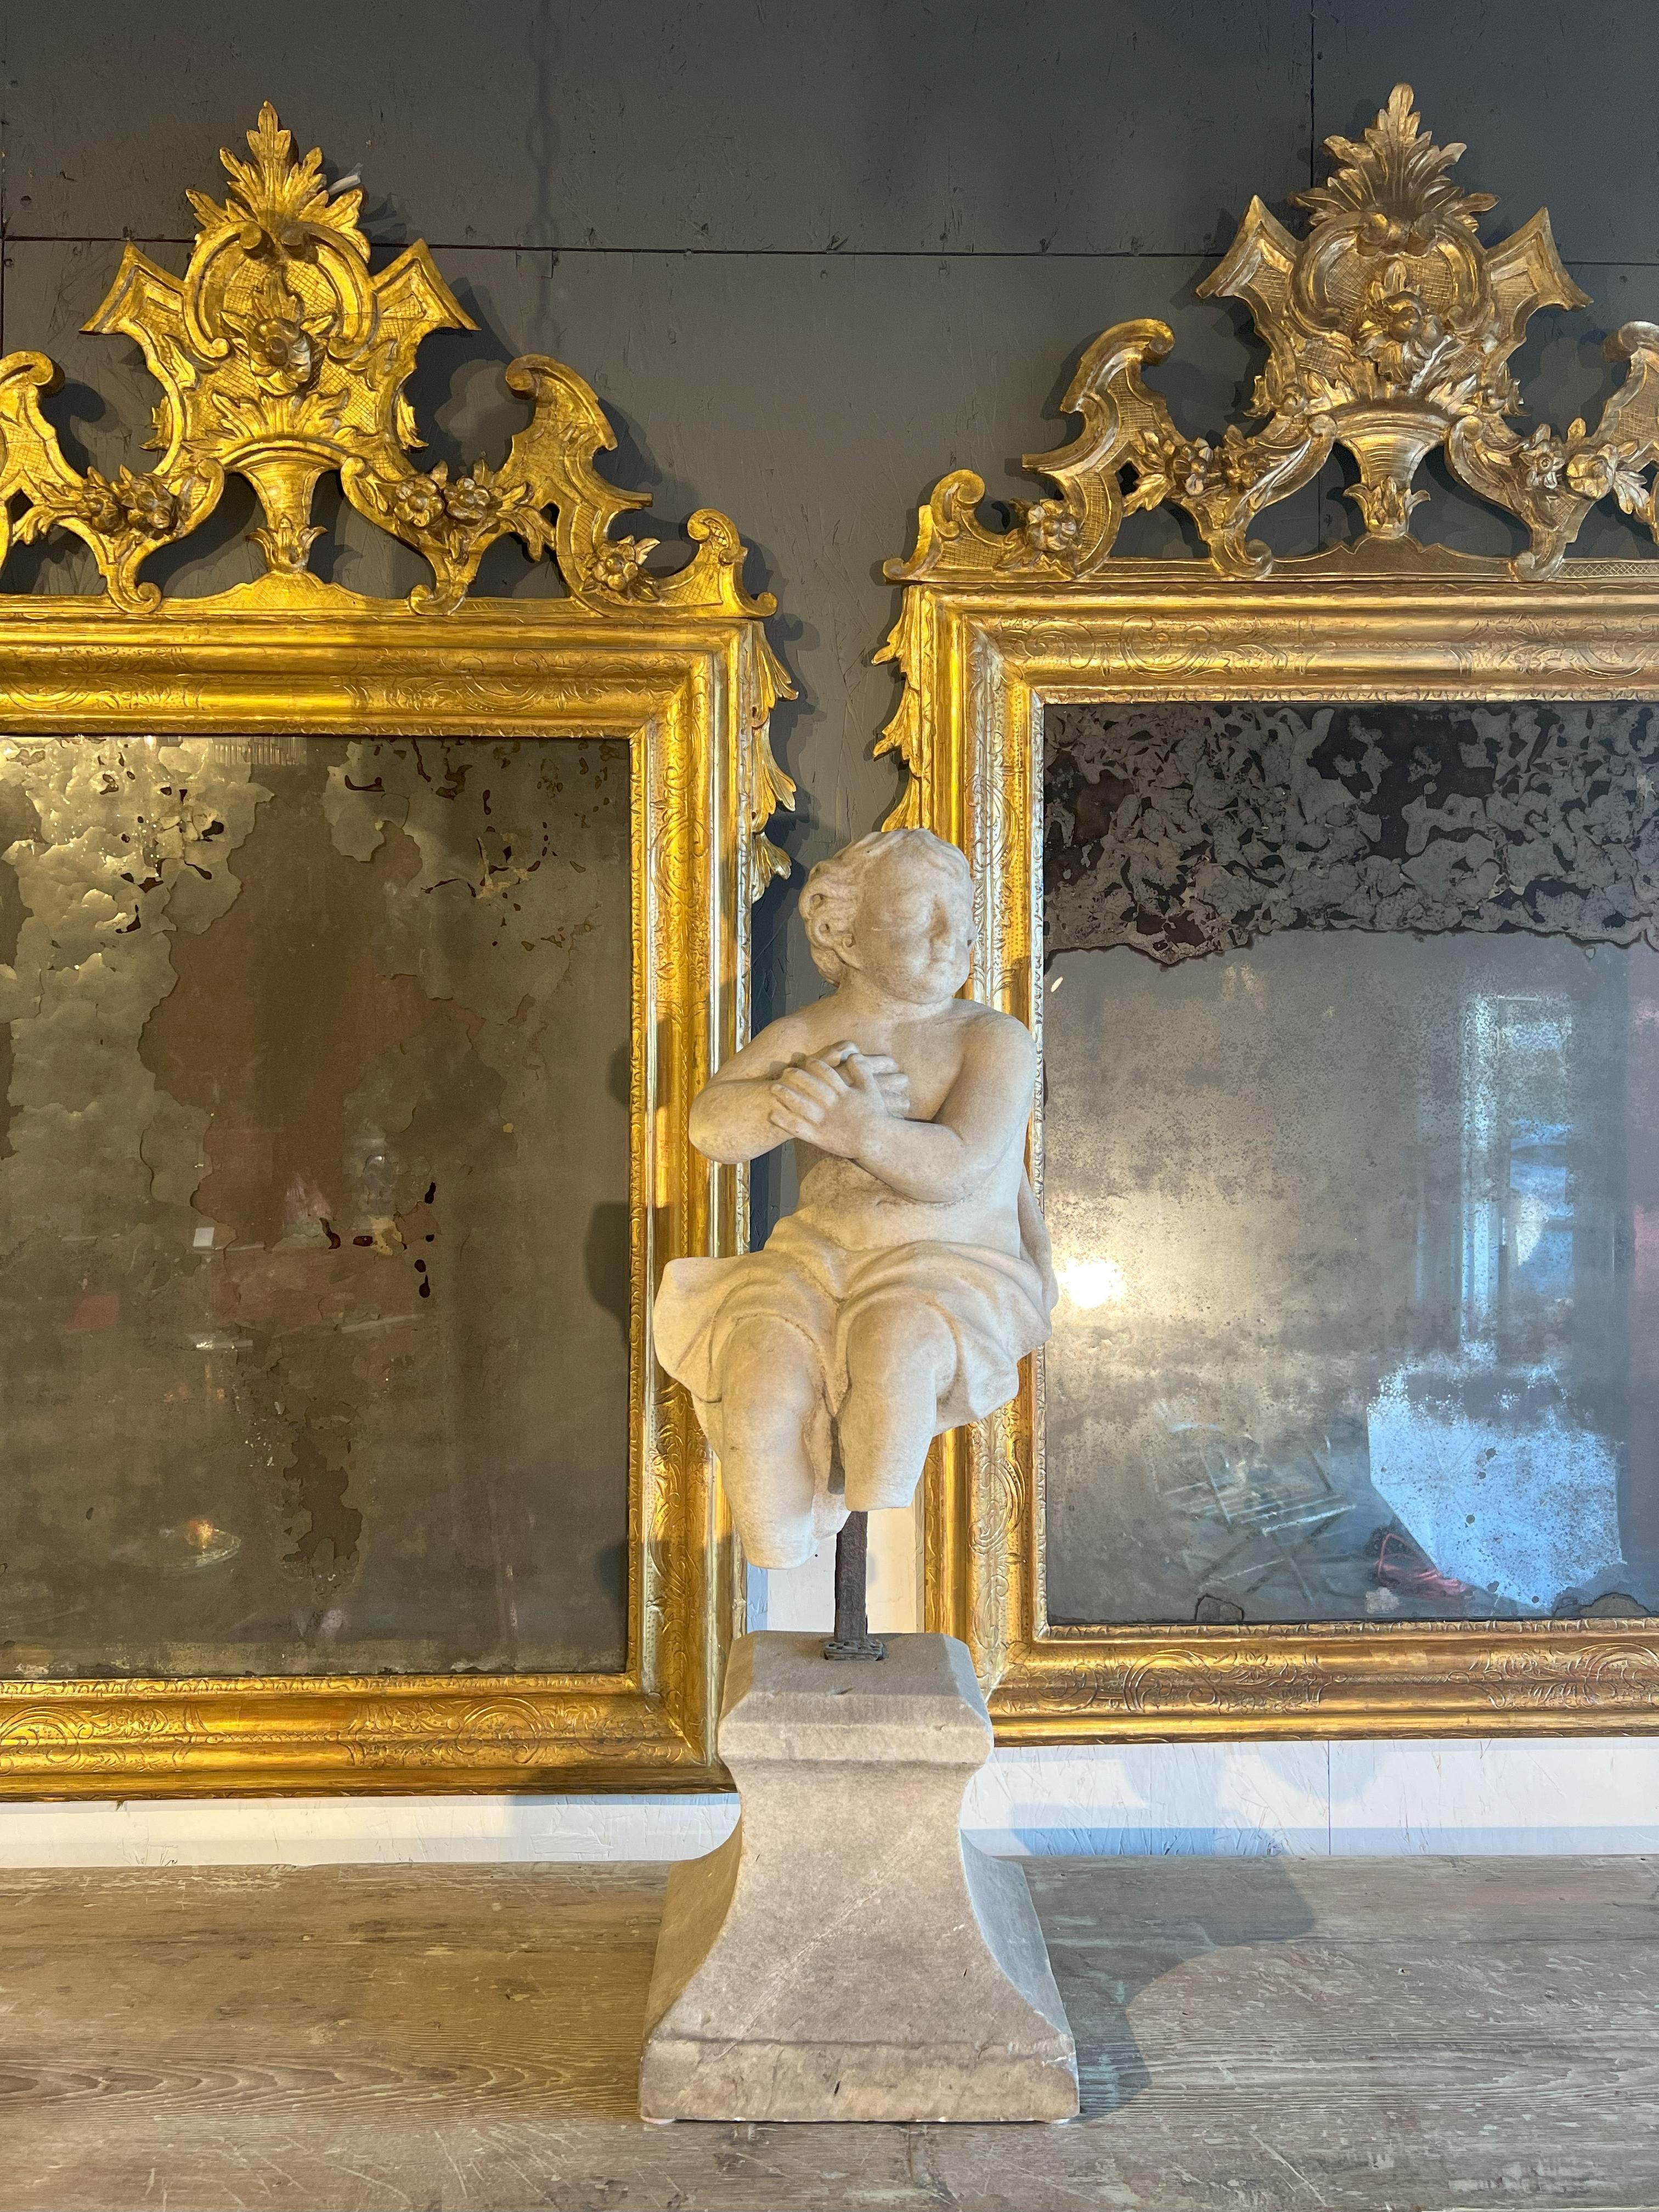 Bei diesem Stück handelt es sich um eine tanzende Putto-Marmorstatue aus dem 18. Jahrhundert, die jetzt zum Kauf angeboten wird. 

Die Skulptur zeigt einen kleinen tanzenden Engel 